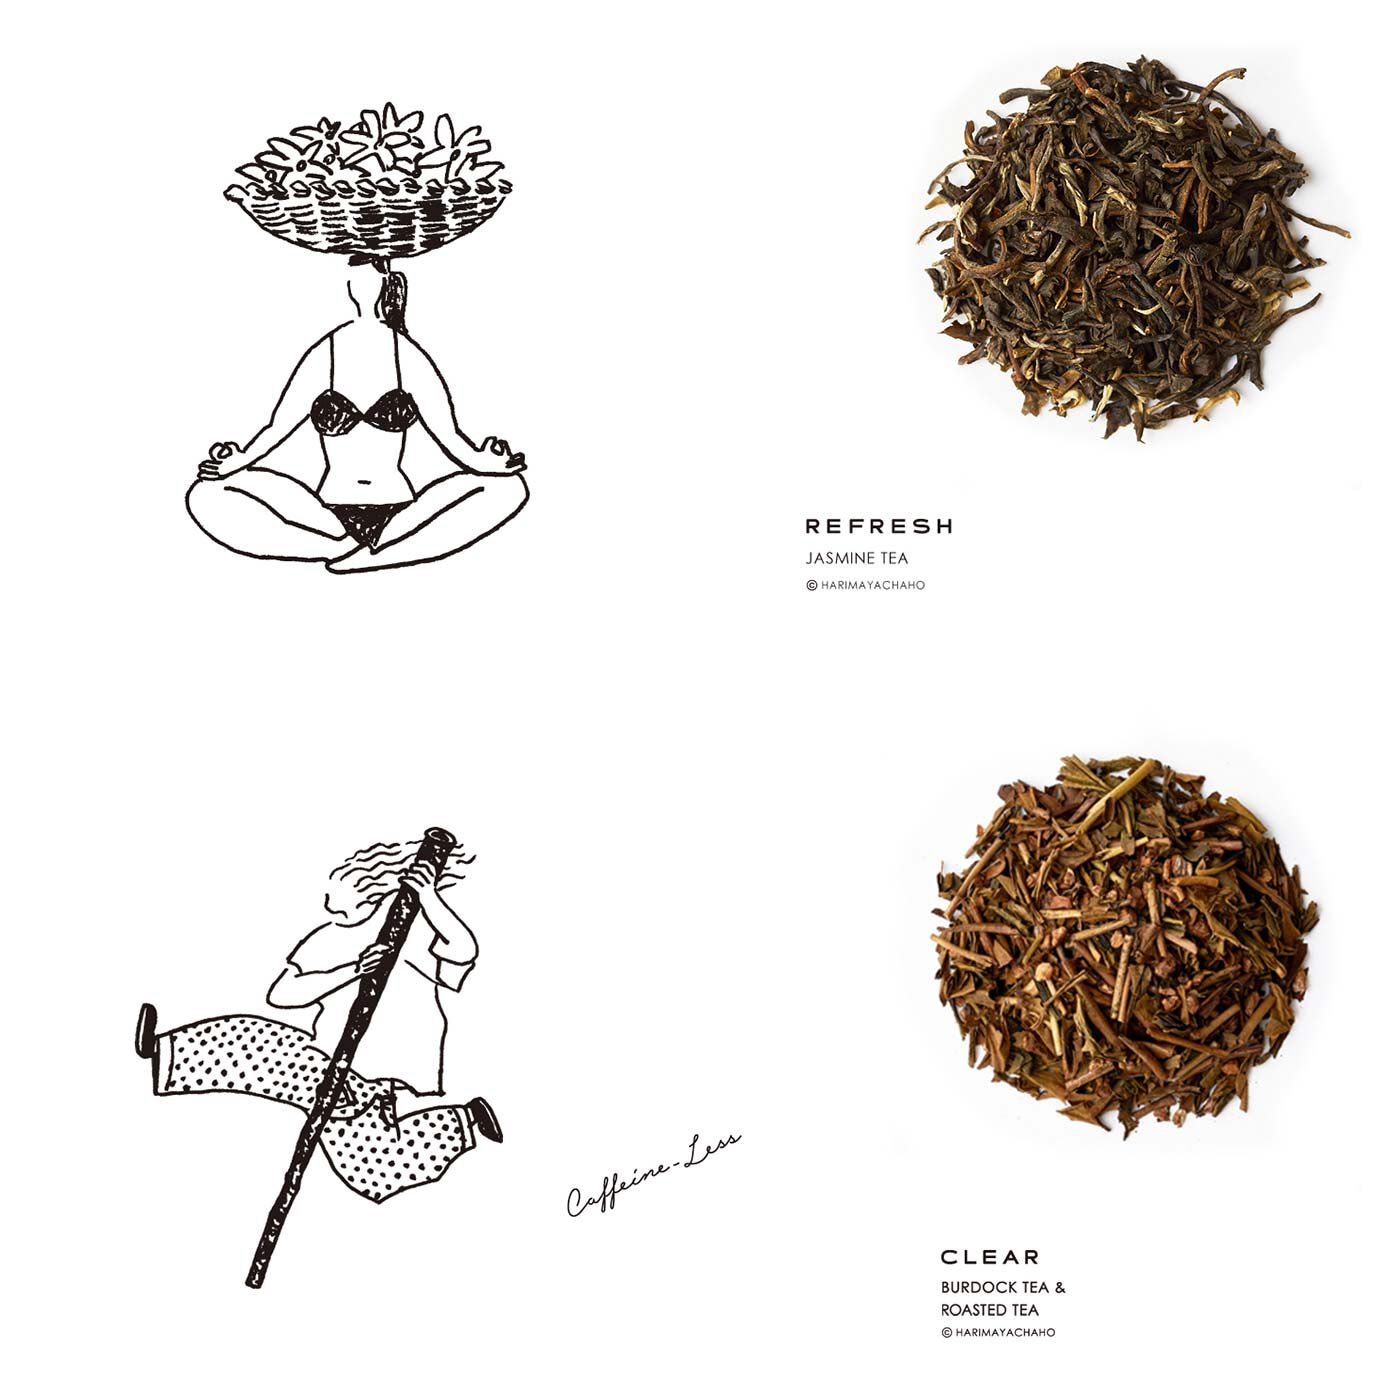 フェリシモの雑貨 Kraso|ｔｔｏ おいしいお茶 楽しいお試し2種類セット〈ティーバッグ〉の会|CLEAR TEA（ごぼう×芽ほうじ茶）：ごぼうを凝縮したようなうまみや香りと、「芽茶」という希少部位を使用したほうじ茶のまろやかな甘みがベストマッチ。 REFRESH TEA（ジャスミン茶）：ジャスミンの花で茶葉を香り付けした、さわやかで華やかなお茶。お湯を注ぐと豊かな香りが立ち上ります。フレッシュな香りは鼻に抜け、ふっと肩の力が抜けて心も体も癒される気がします。うまみと淡い渋みのバランスも絶妙。水出しでも、しっかりジャスミンの香りが楽しめます。より渋みを少なくしたい方は、お湯よりもすっきり飲みやすくなる水出しがおすすめ。